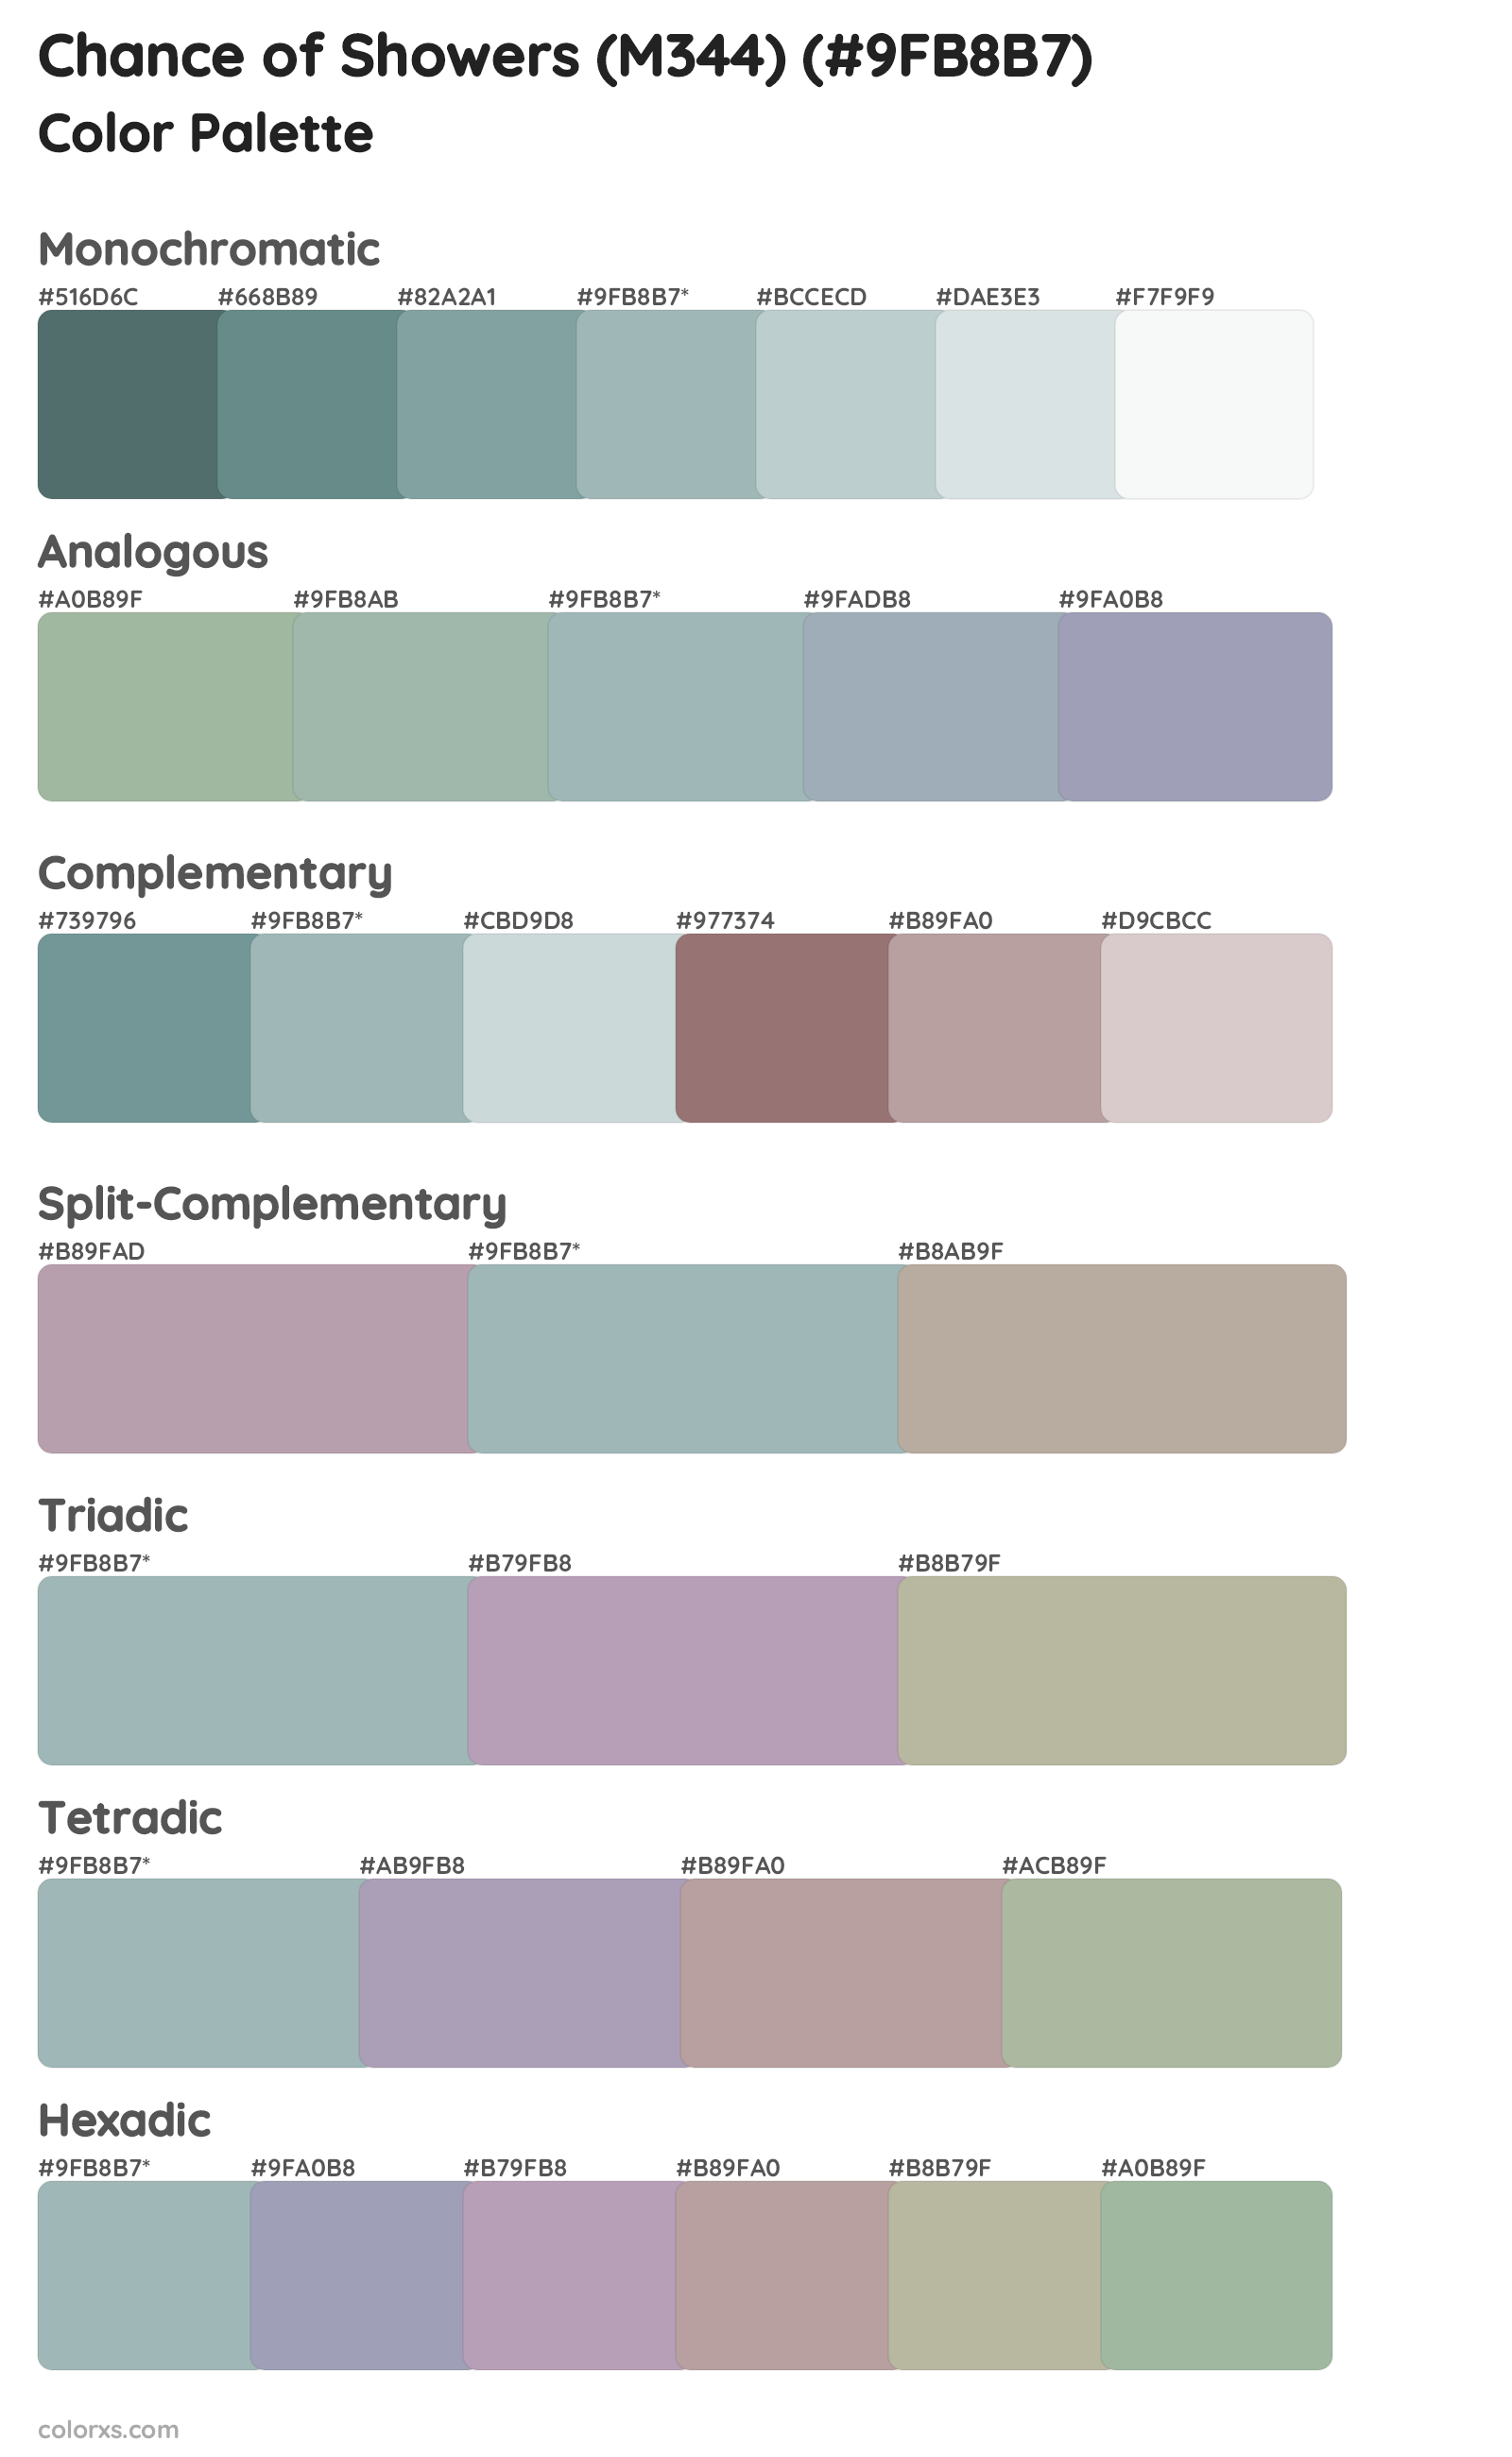 Chance of Showers (M344) Color Scheme Palettes